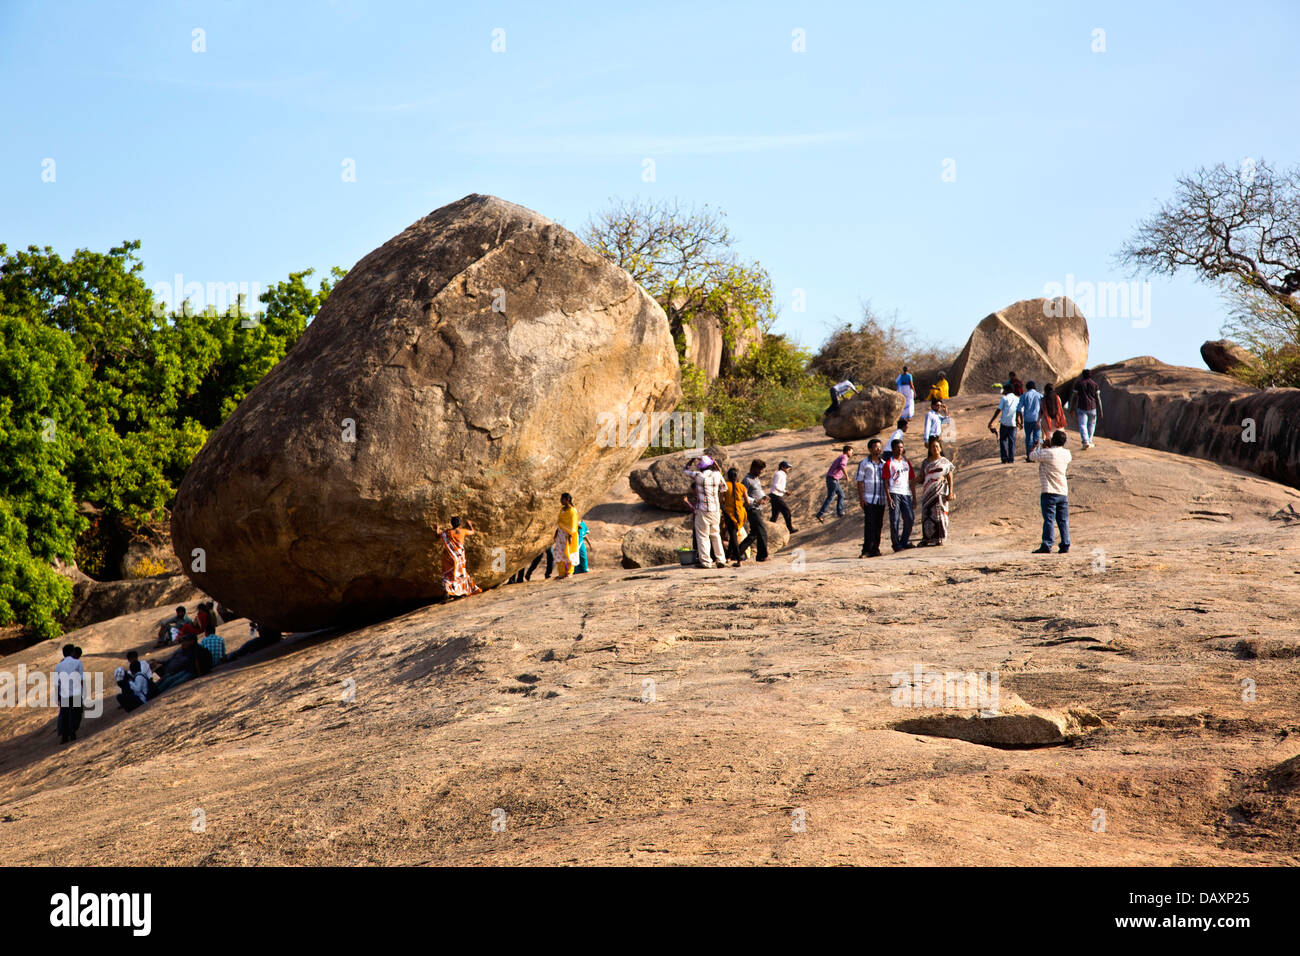 Les touristes près d'un rocher sur une colline, Krishna's Butter Ball, Mahabalipuram, district de Kanchipuram, au Tamil Nadu, Inde Banque D'Images